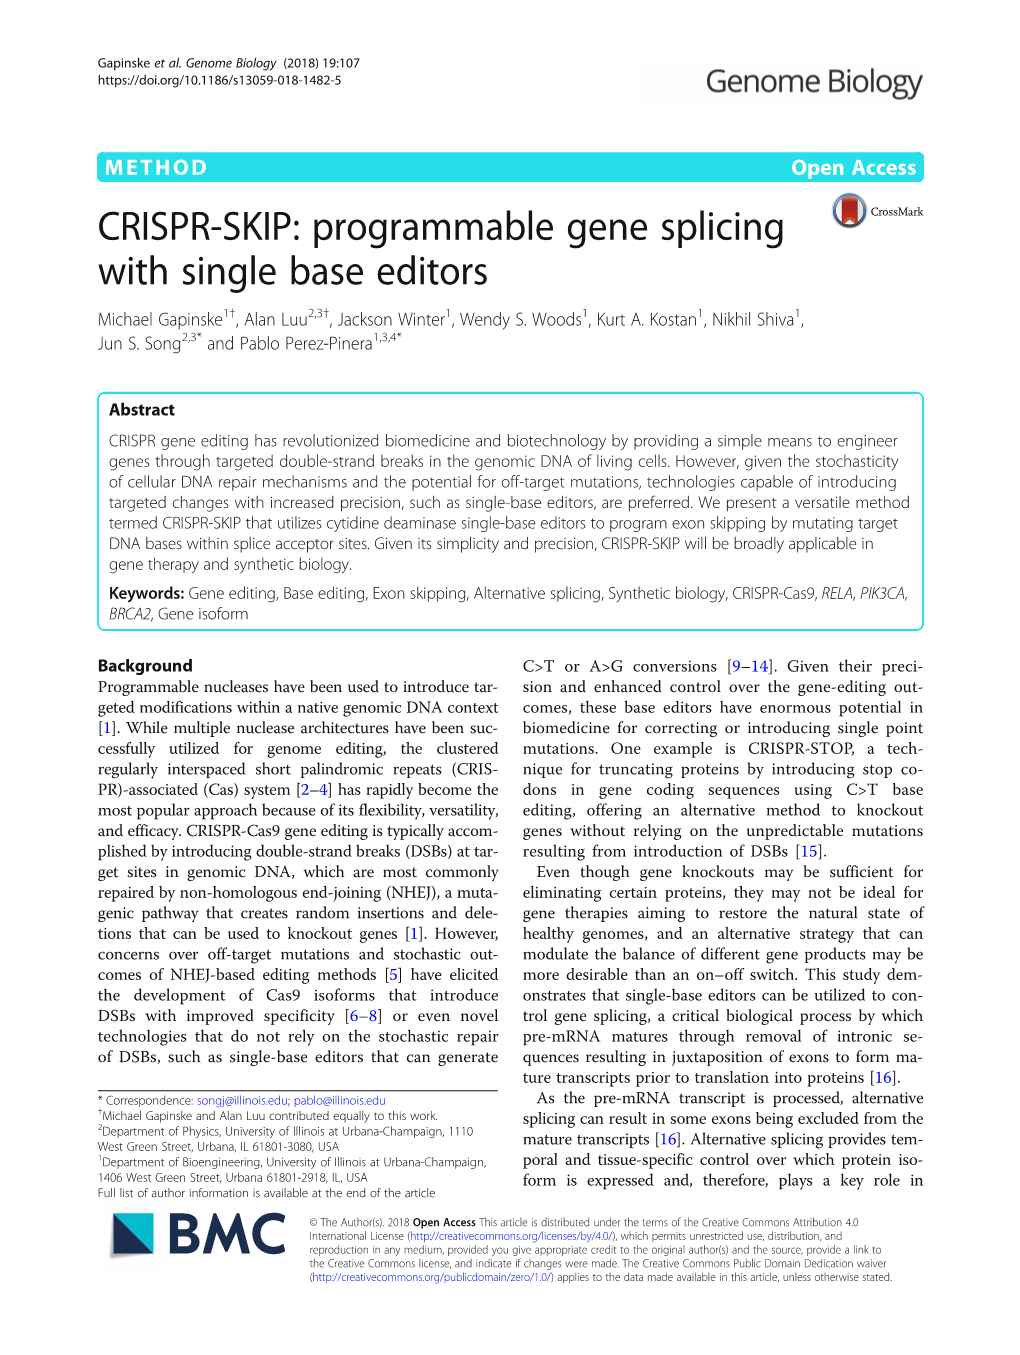 CRISPR-SKIP: Programmable Gene Splicing with Single Base Editors Michael Gapinske1†, Alan Luu2,3†, Jackson Winter1, Wendy S